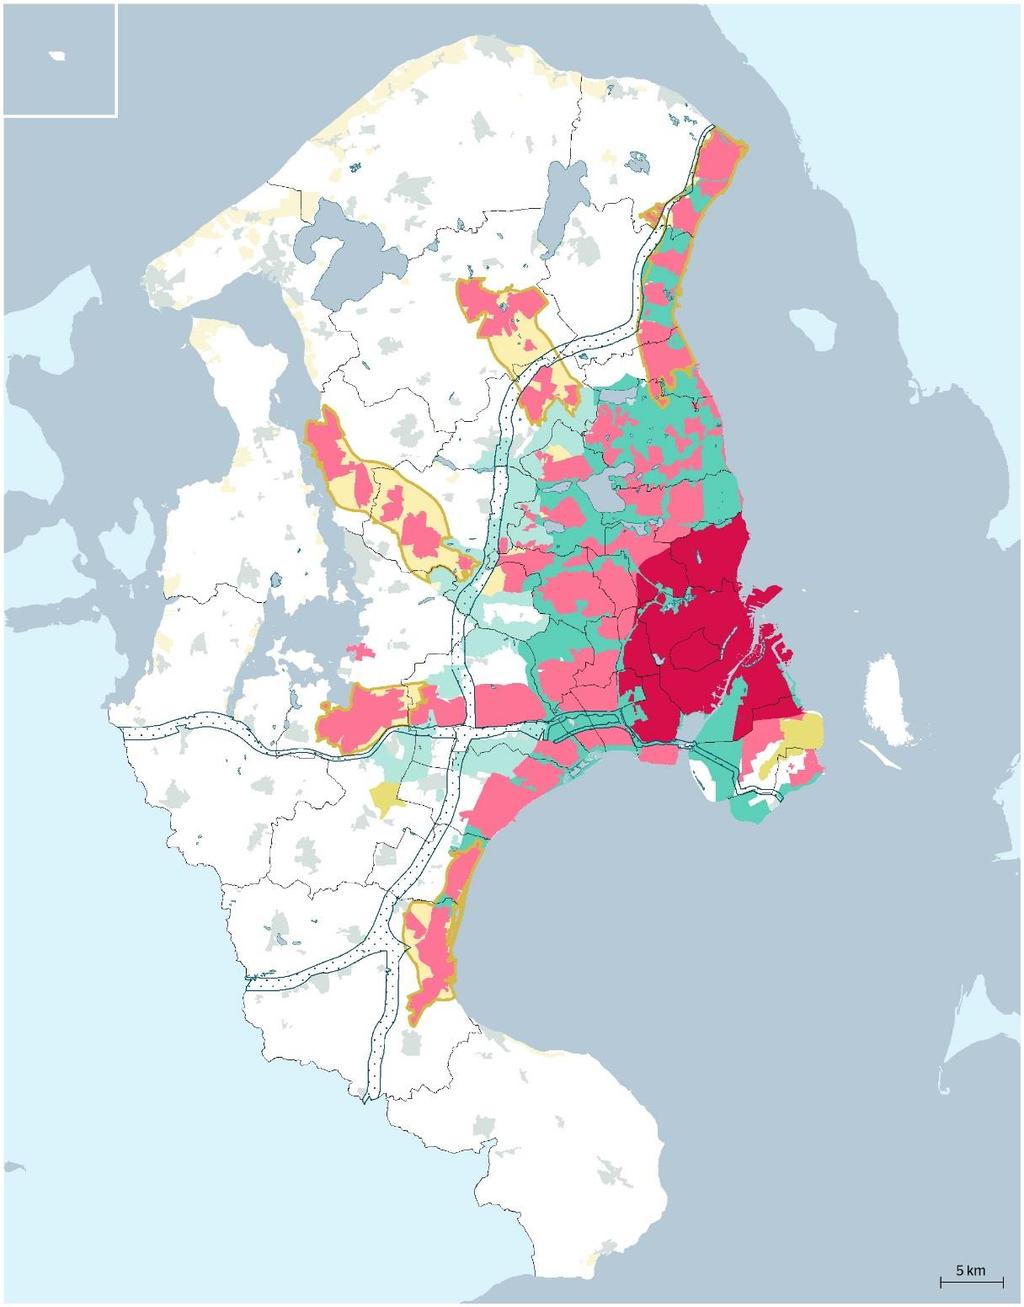 Fingerplan valtion suunnitteluvälineenä Laajan kaupunkiseudun kattava strateginen maankäytön suunnitelma